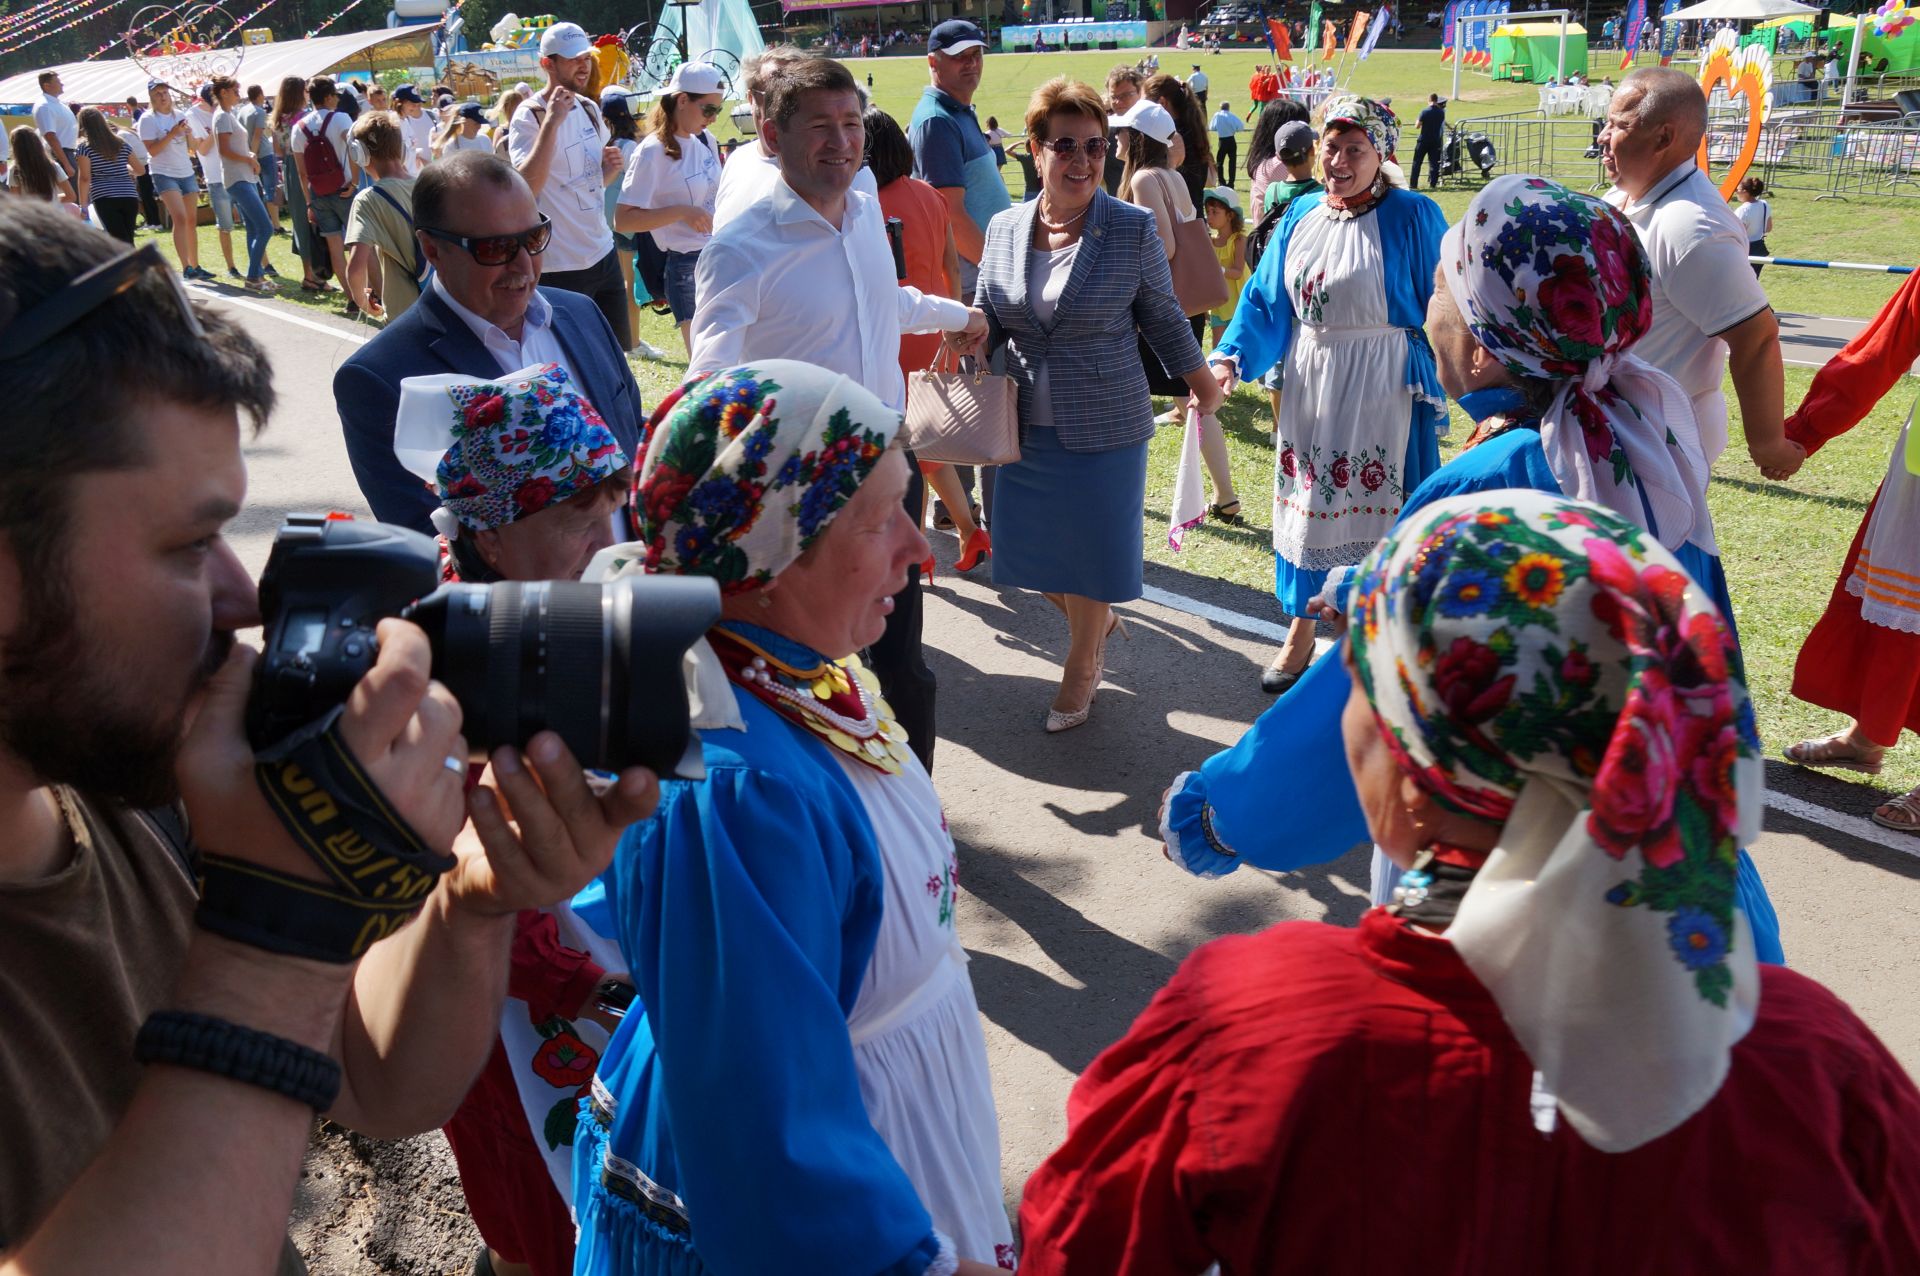 Фестиваль "Скорлупино" встречает гостей